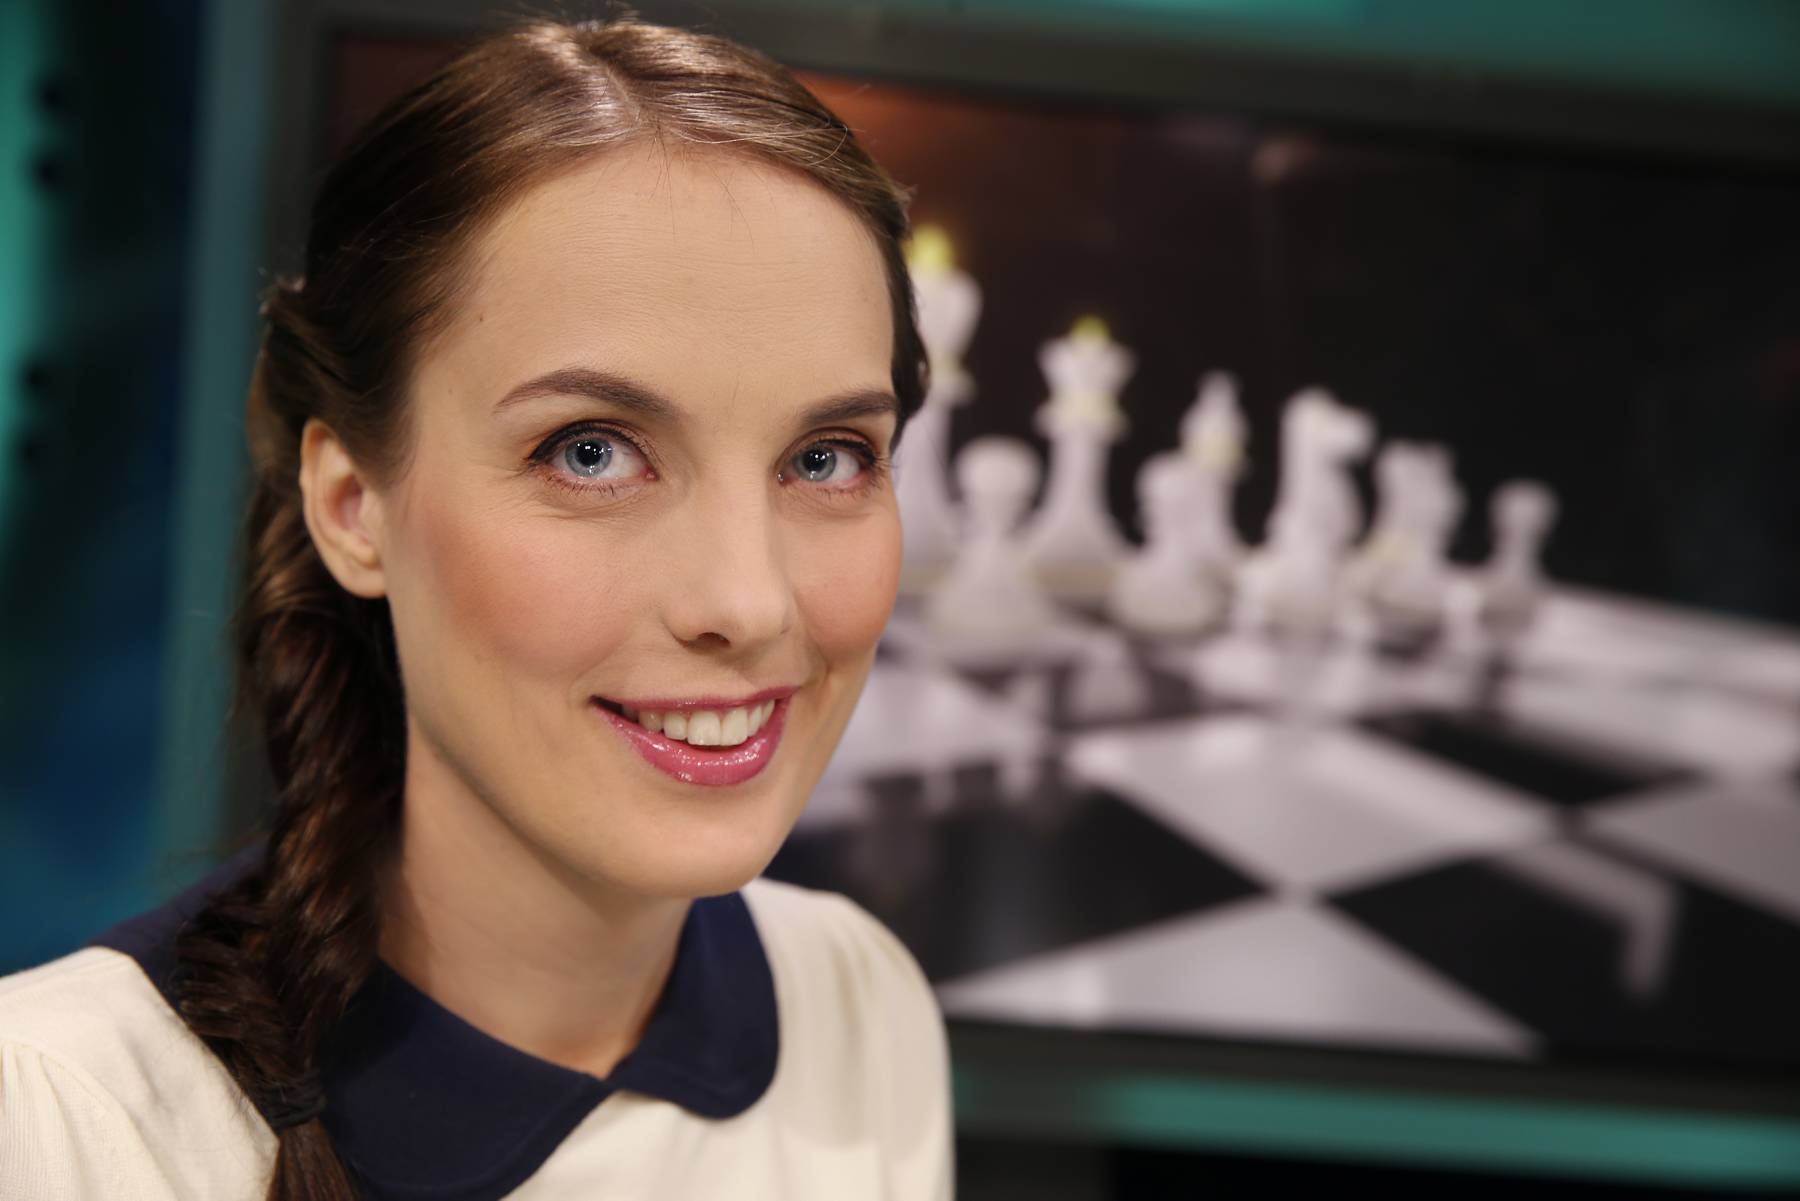 Intervju med vår Sjakk-Heidi